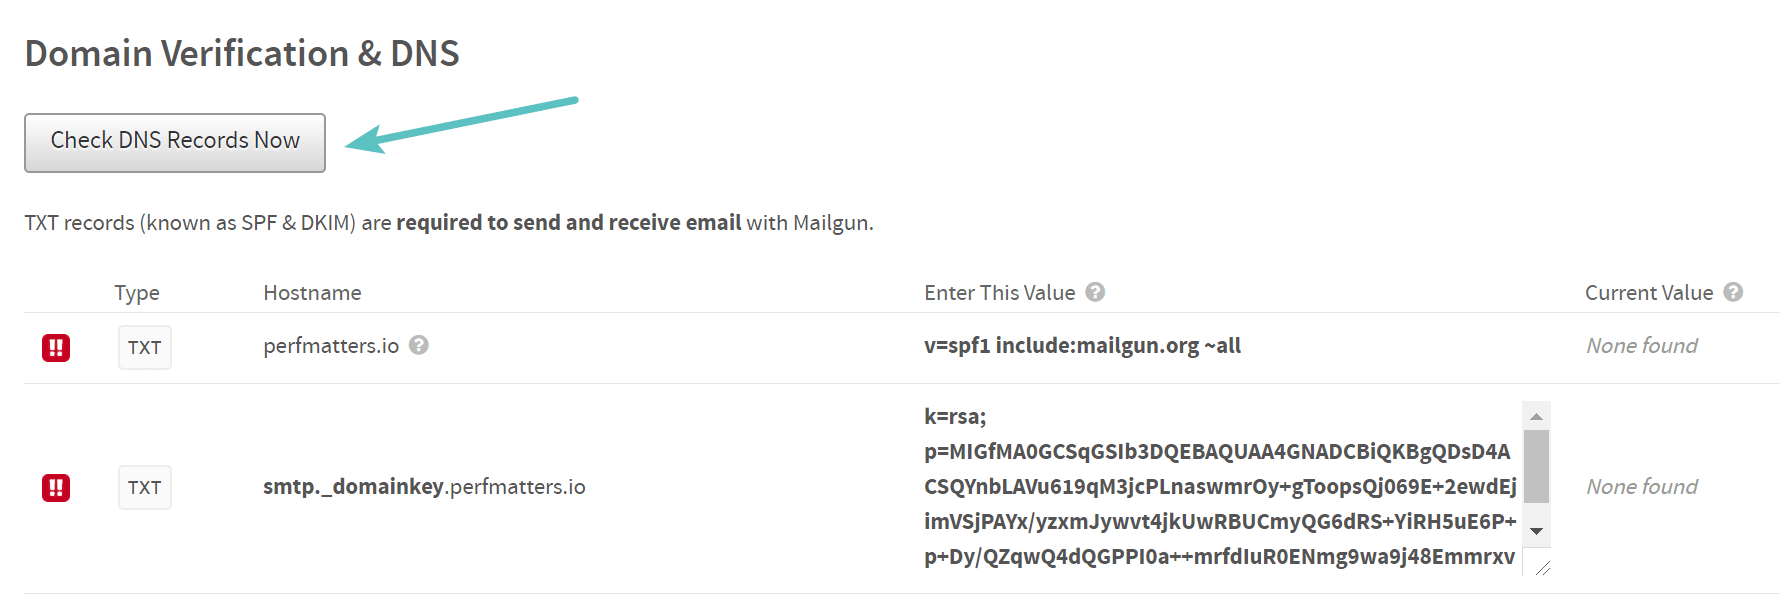 Verificação de registros DNS no Mailgun